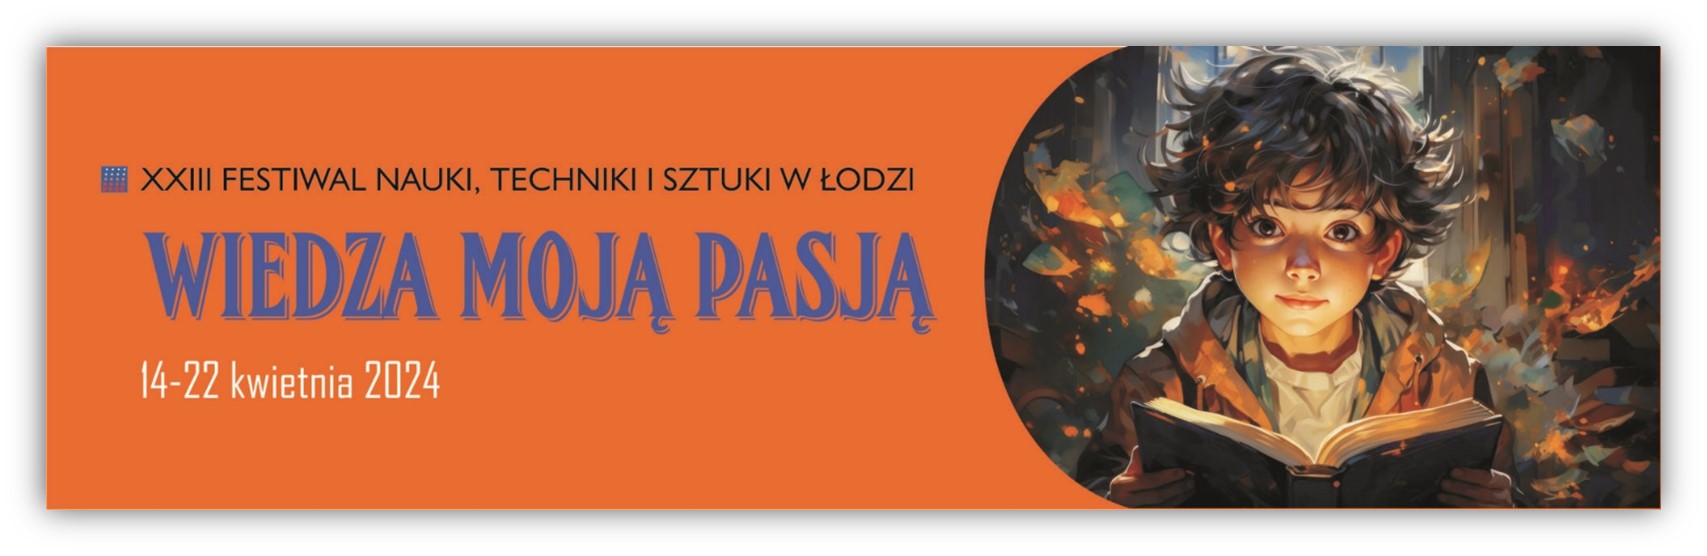 XXIII Festiwal Nauki, Techniki i Sztuki w Łodzi